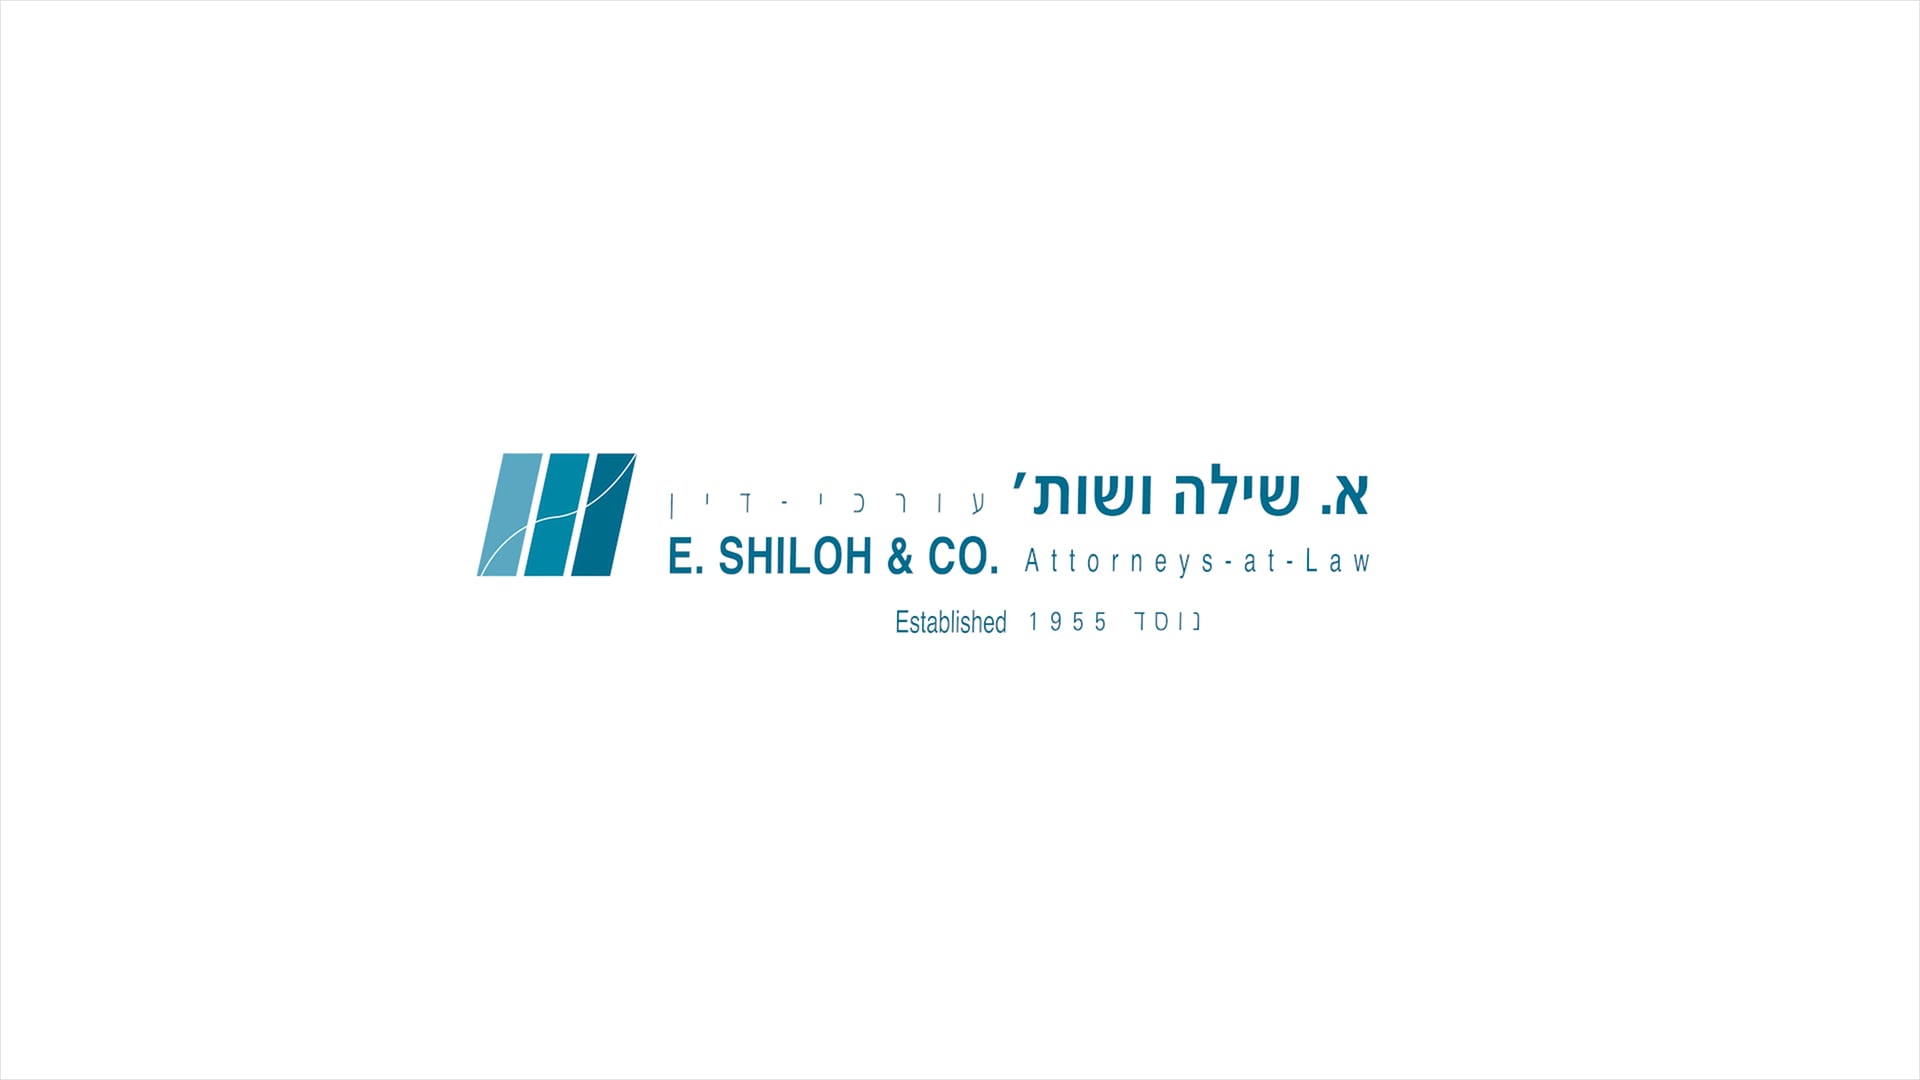 E. SHILOH & CO.  Attorneys-at-Law